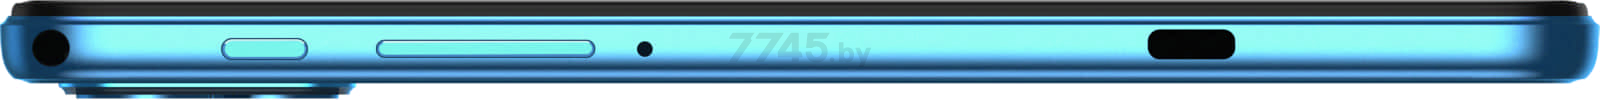 Планшет DOOGEE T10 8GB/128GB LTE Neptune Blue - Фото 8